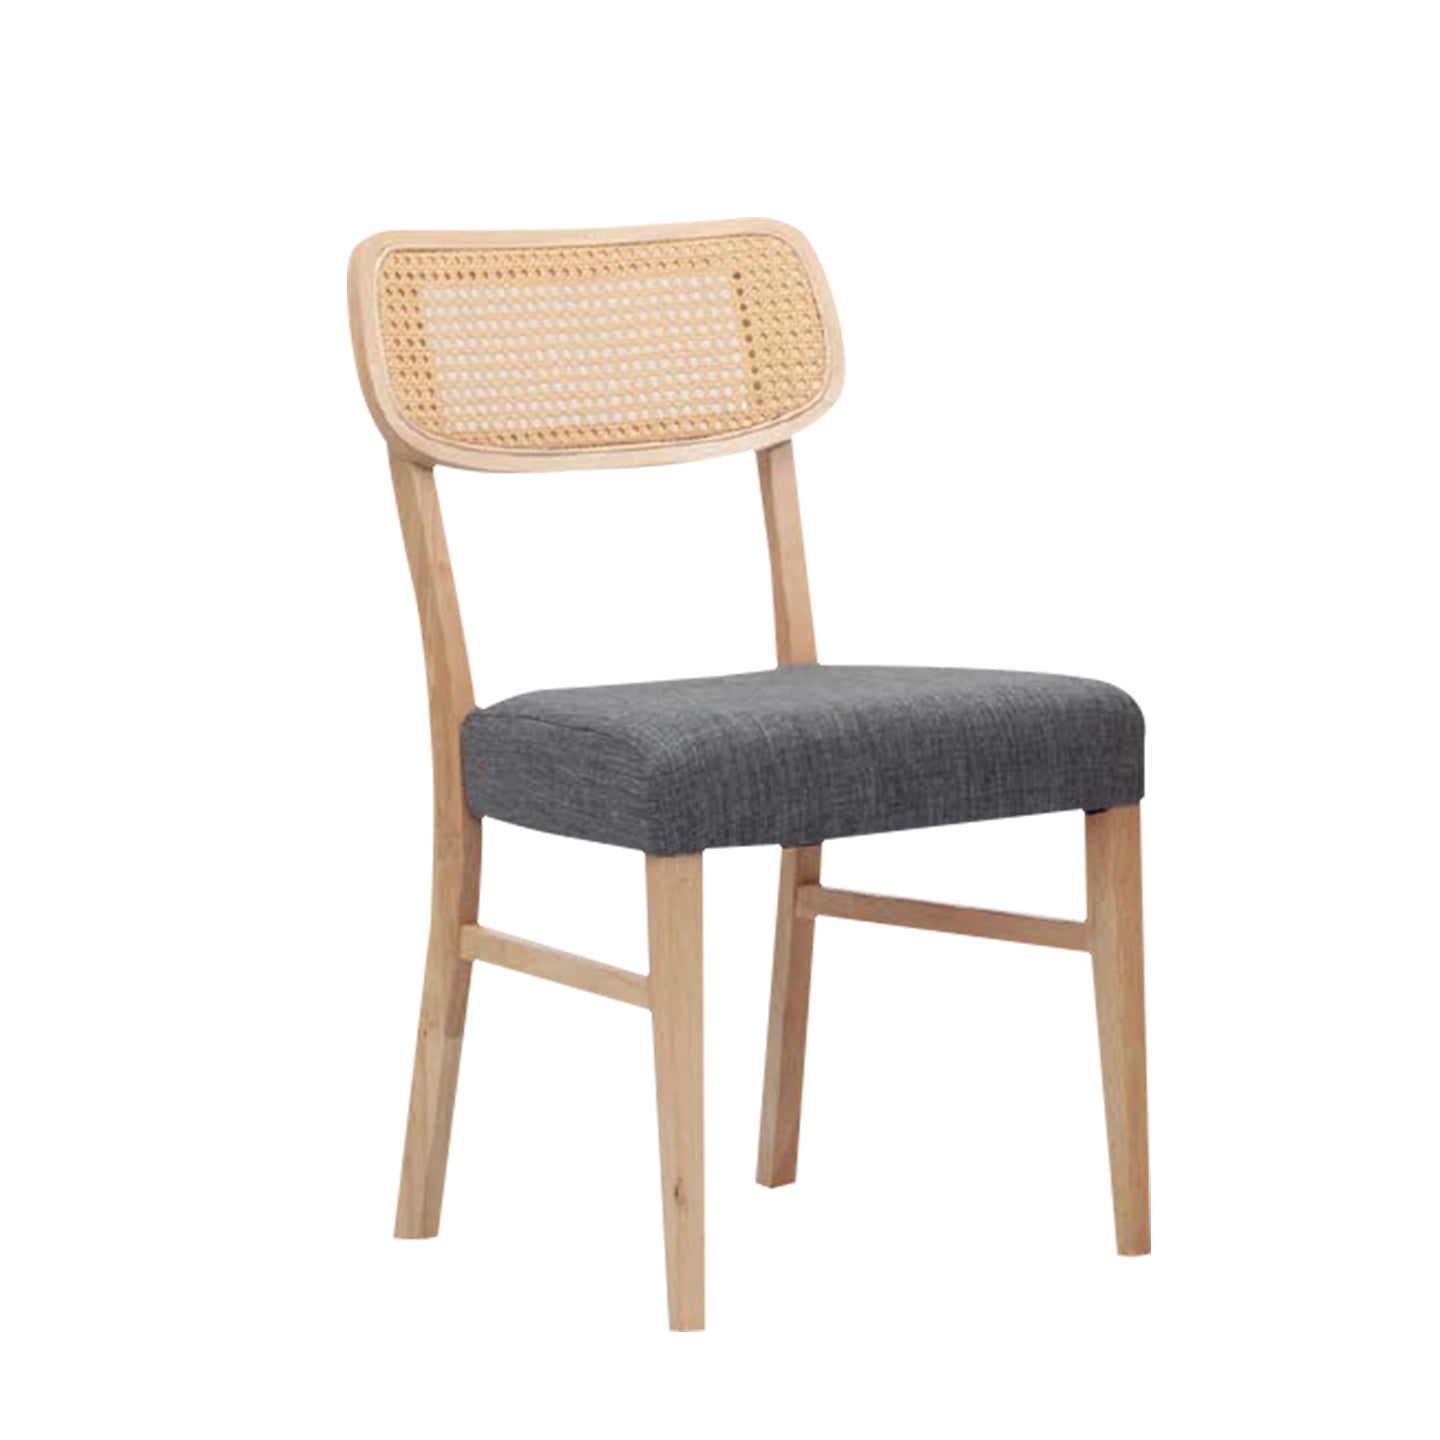 Chiba Rattan Chair